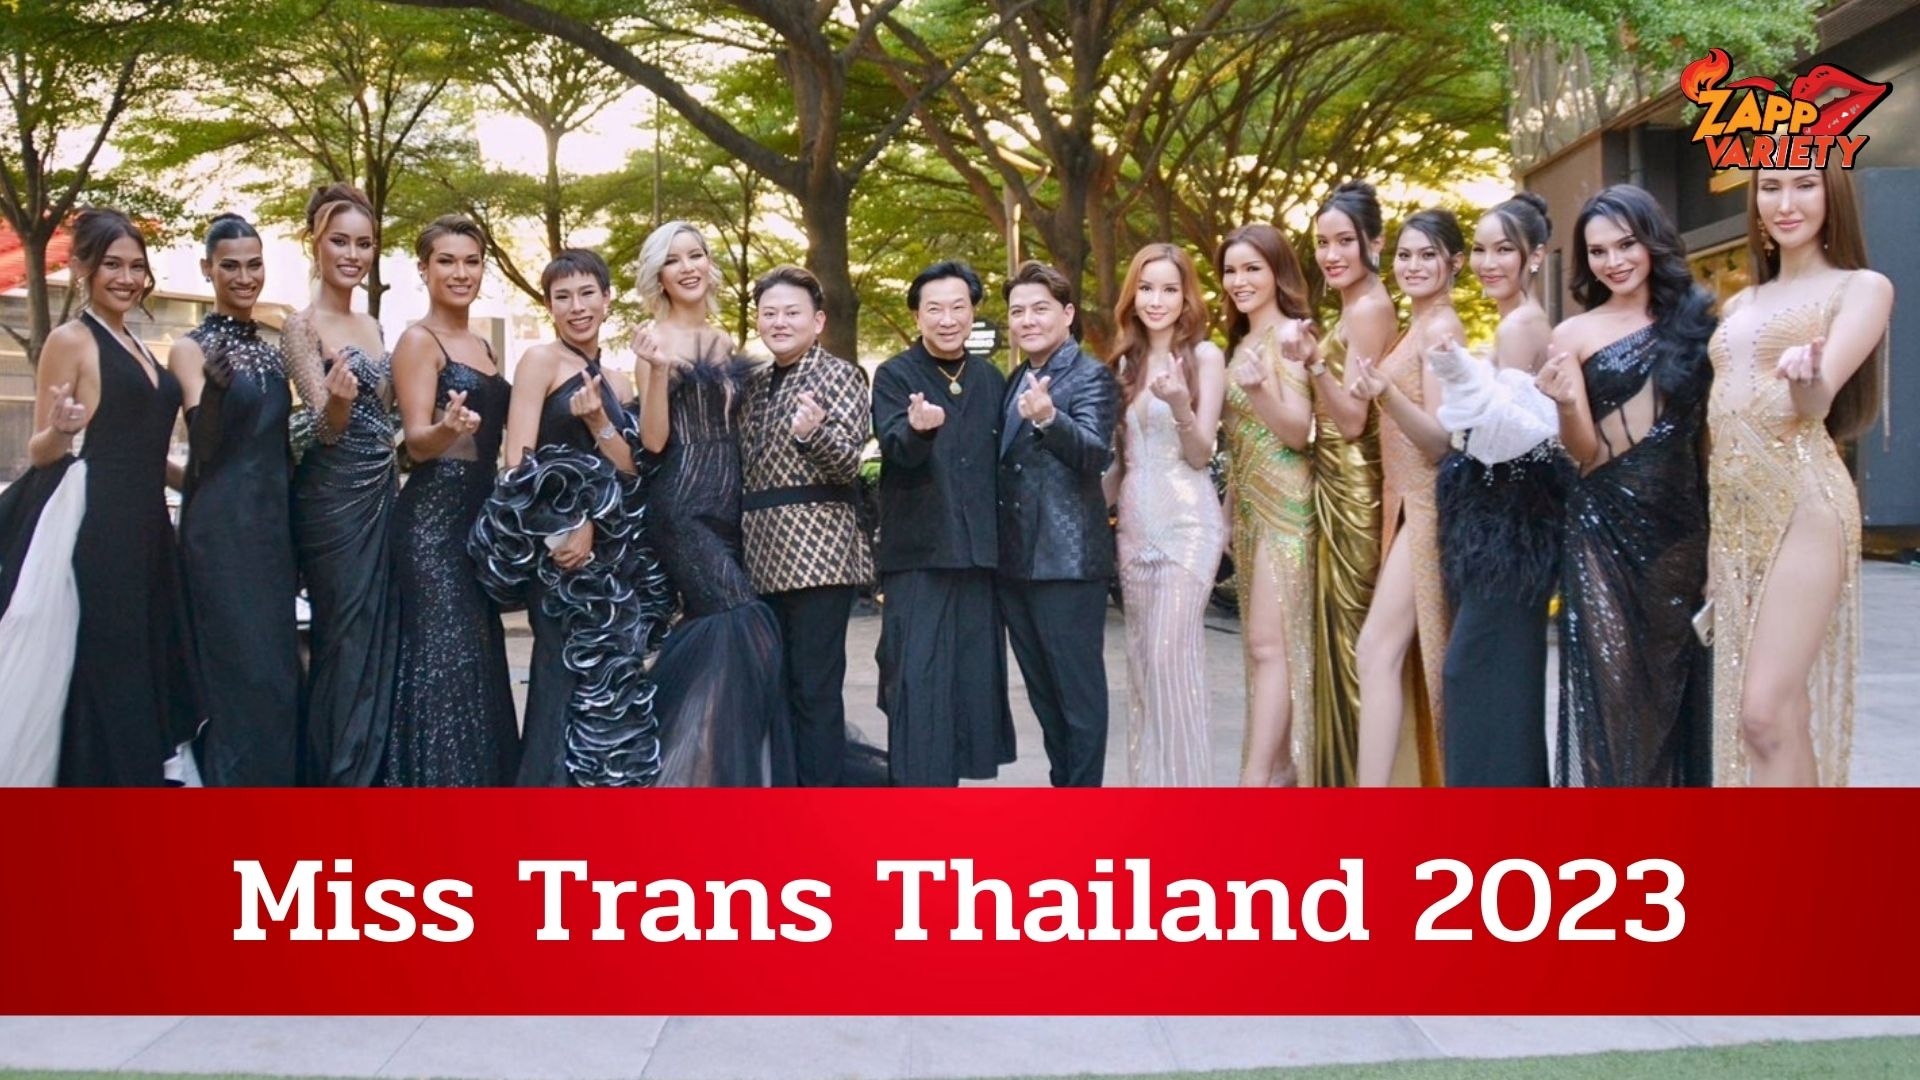 Miss Trans Thailand 2023ครั้งแรกของการประกวดระบบ77 จังหวัดของเวทีสาว Trans พร้อมเปิดตัวผู้เข้าประกวดทั้ง 77 คน สุดยิ่งใหญ่สมศักดิ์ศรี 11ก.ค. นี้!!